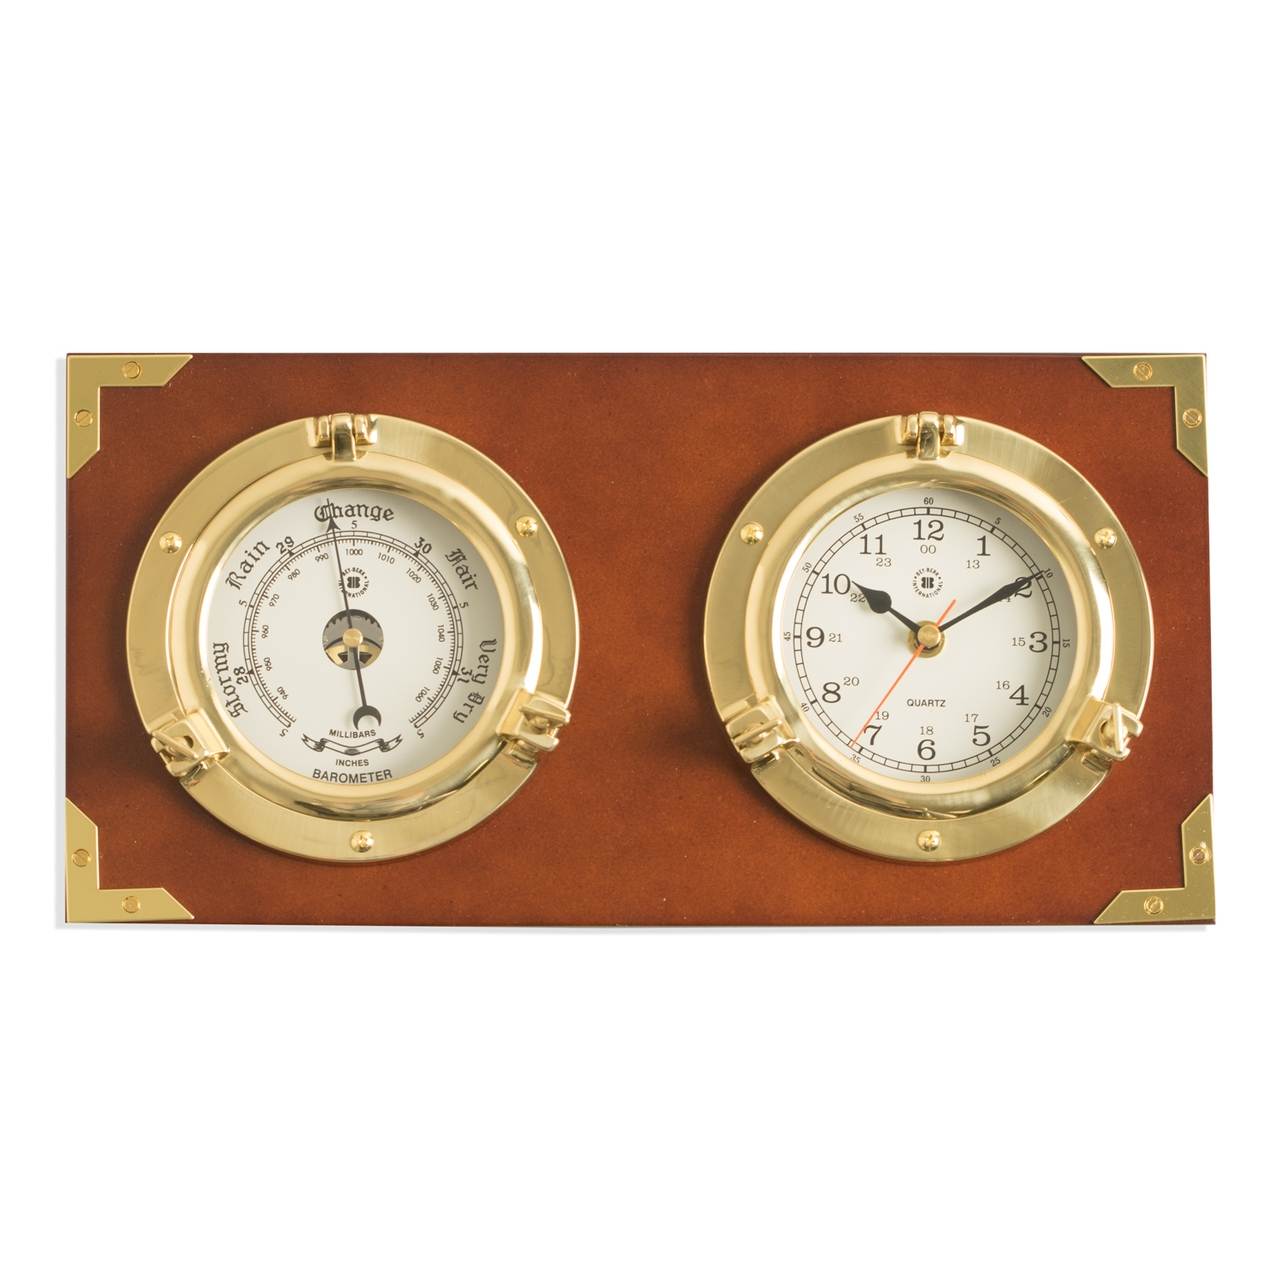 Two Porthole Quartz Clock and Barometer on Teak Finished Wood